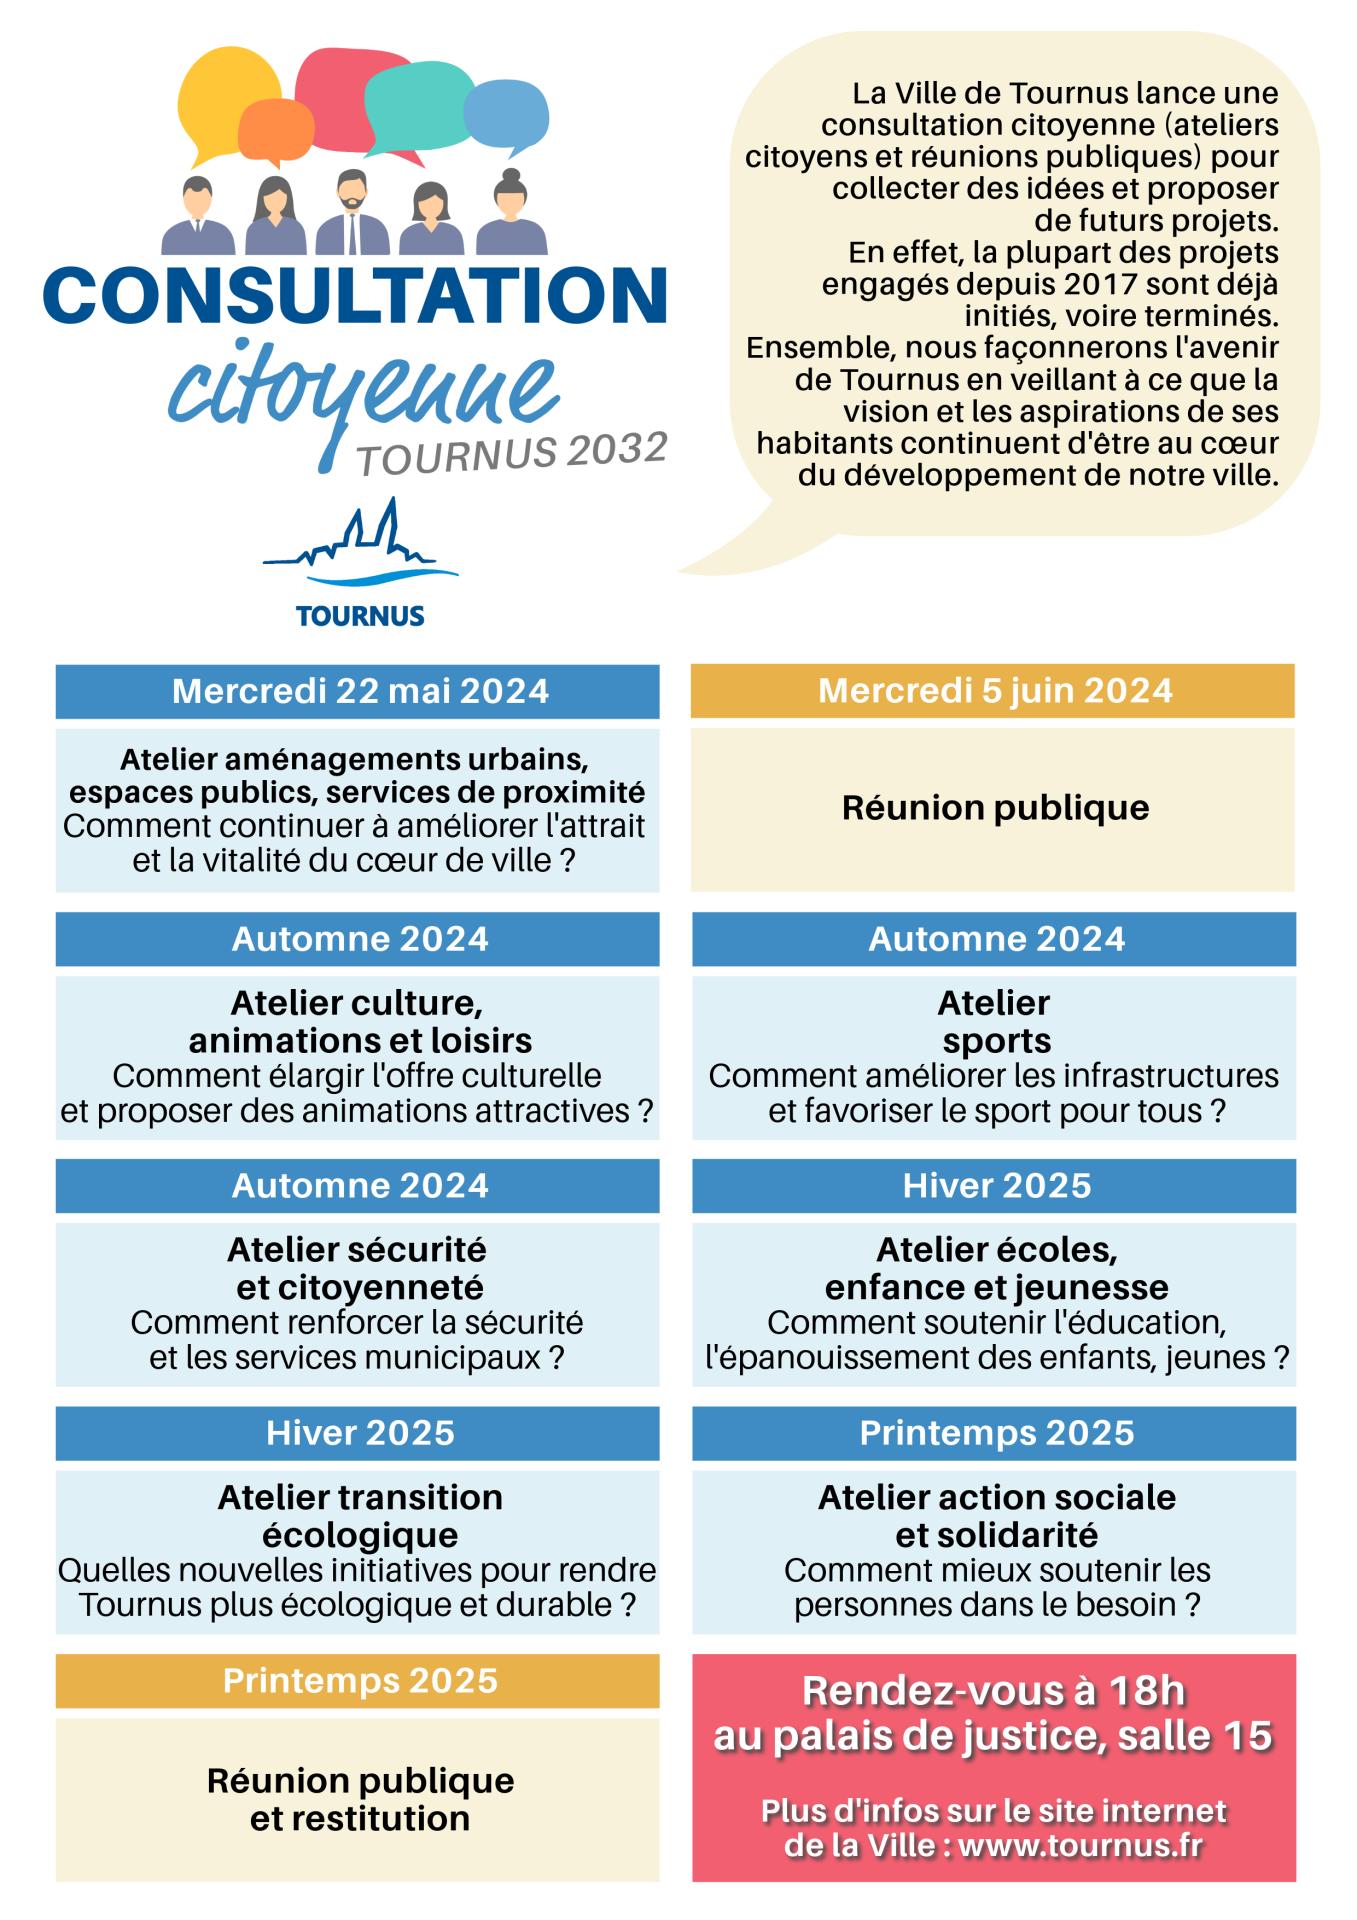 Consultation citoyenne - Tournus 2032